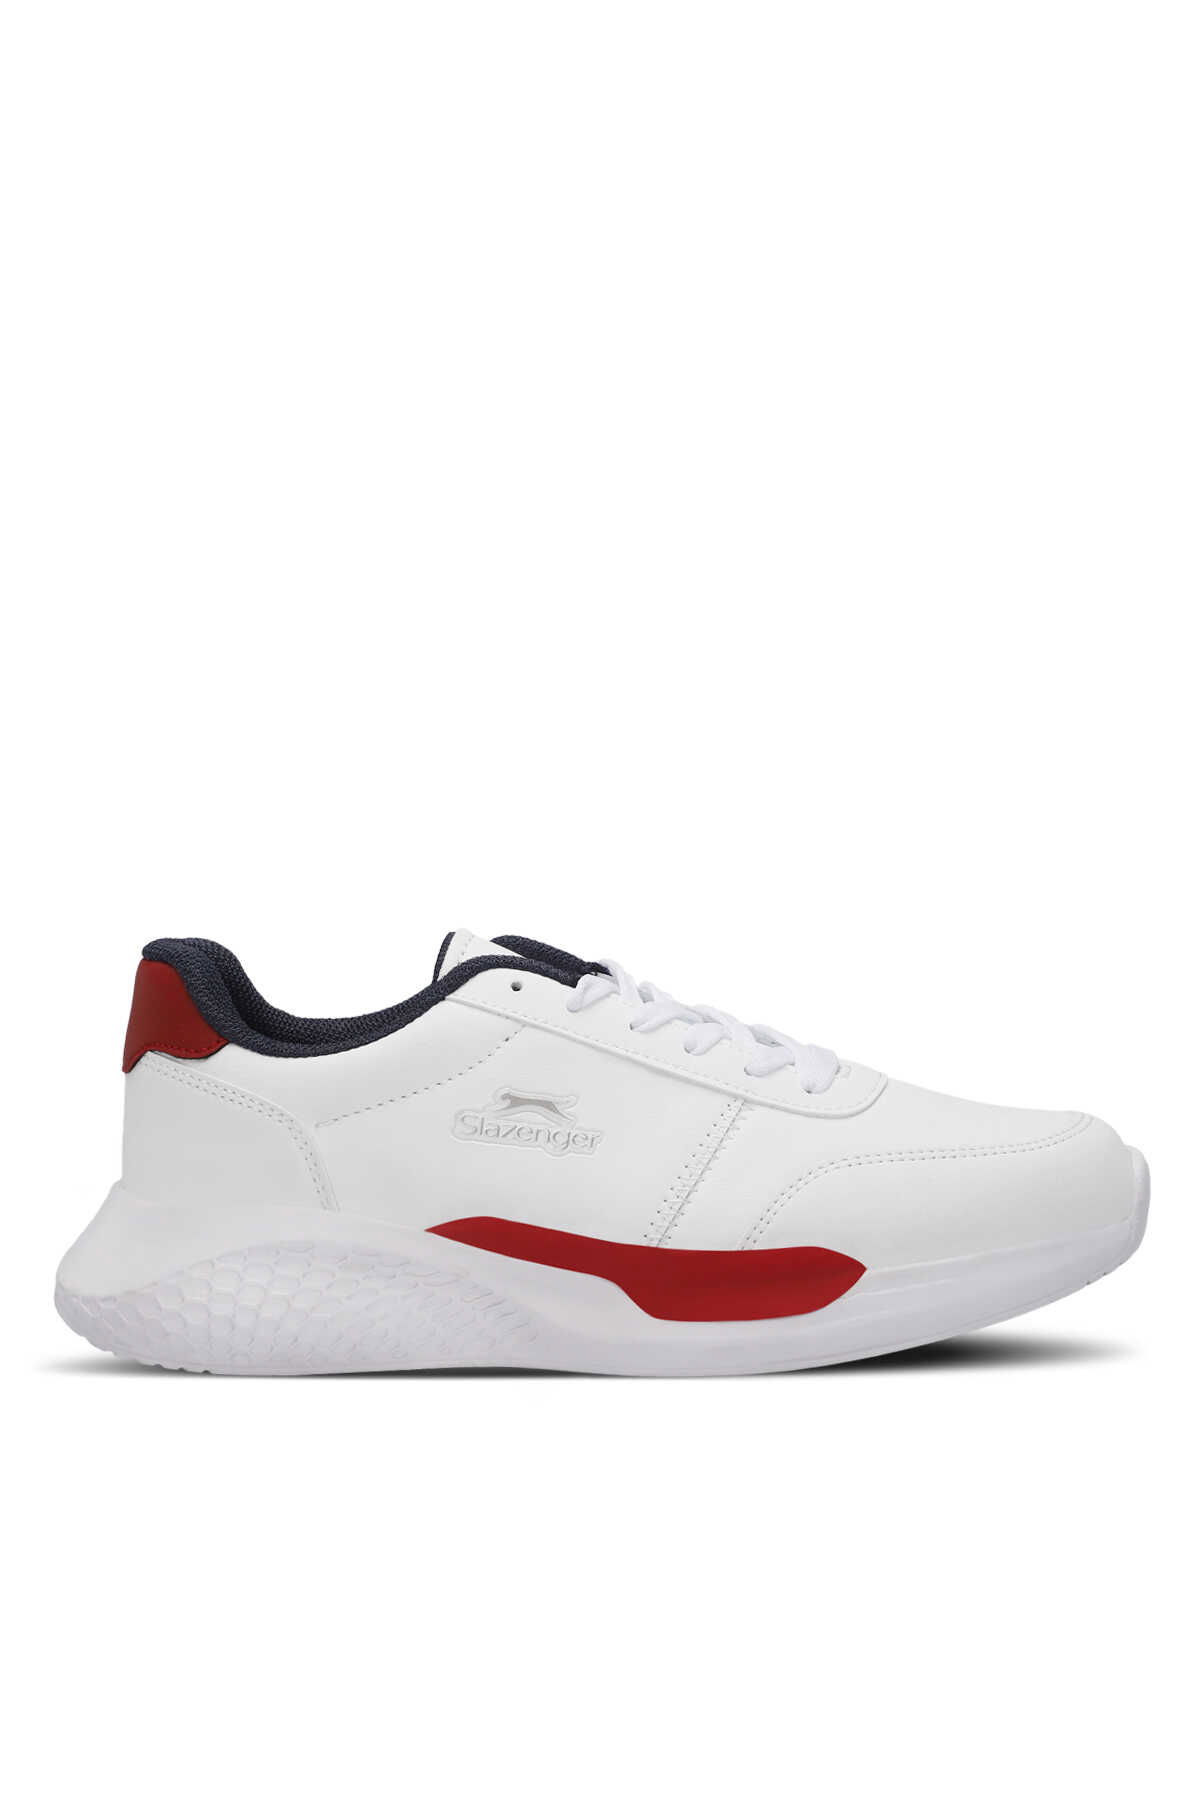 Slazenger - Slazenger MARTINE I Erkek Sneaker Ayakkabı Beyaz / Lacivert / Kırmızı